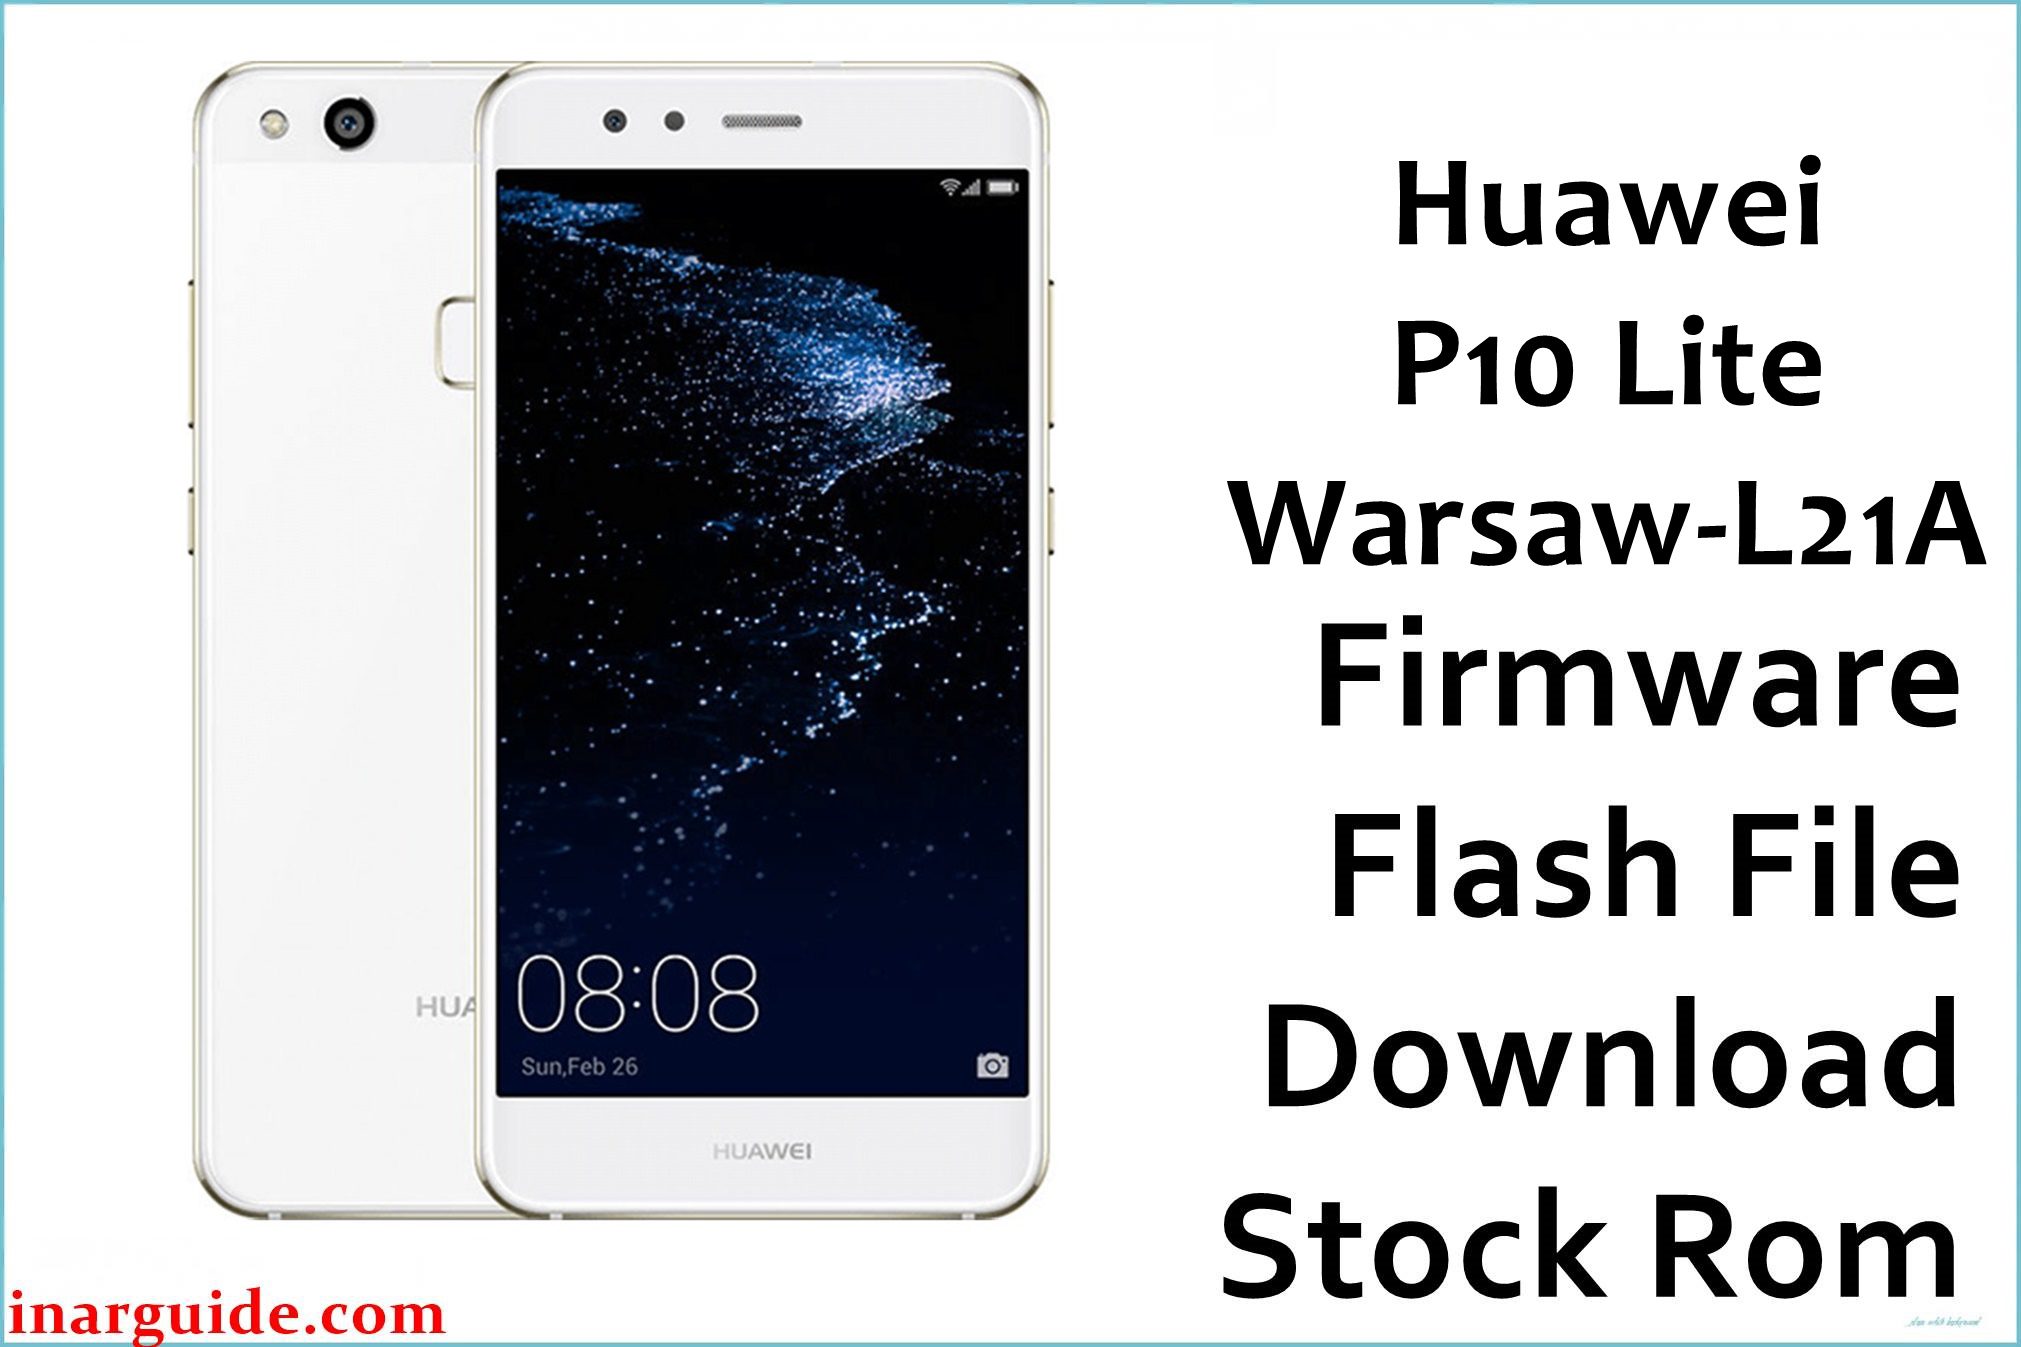 Huawei P10 Lite Warsaw L21A